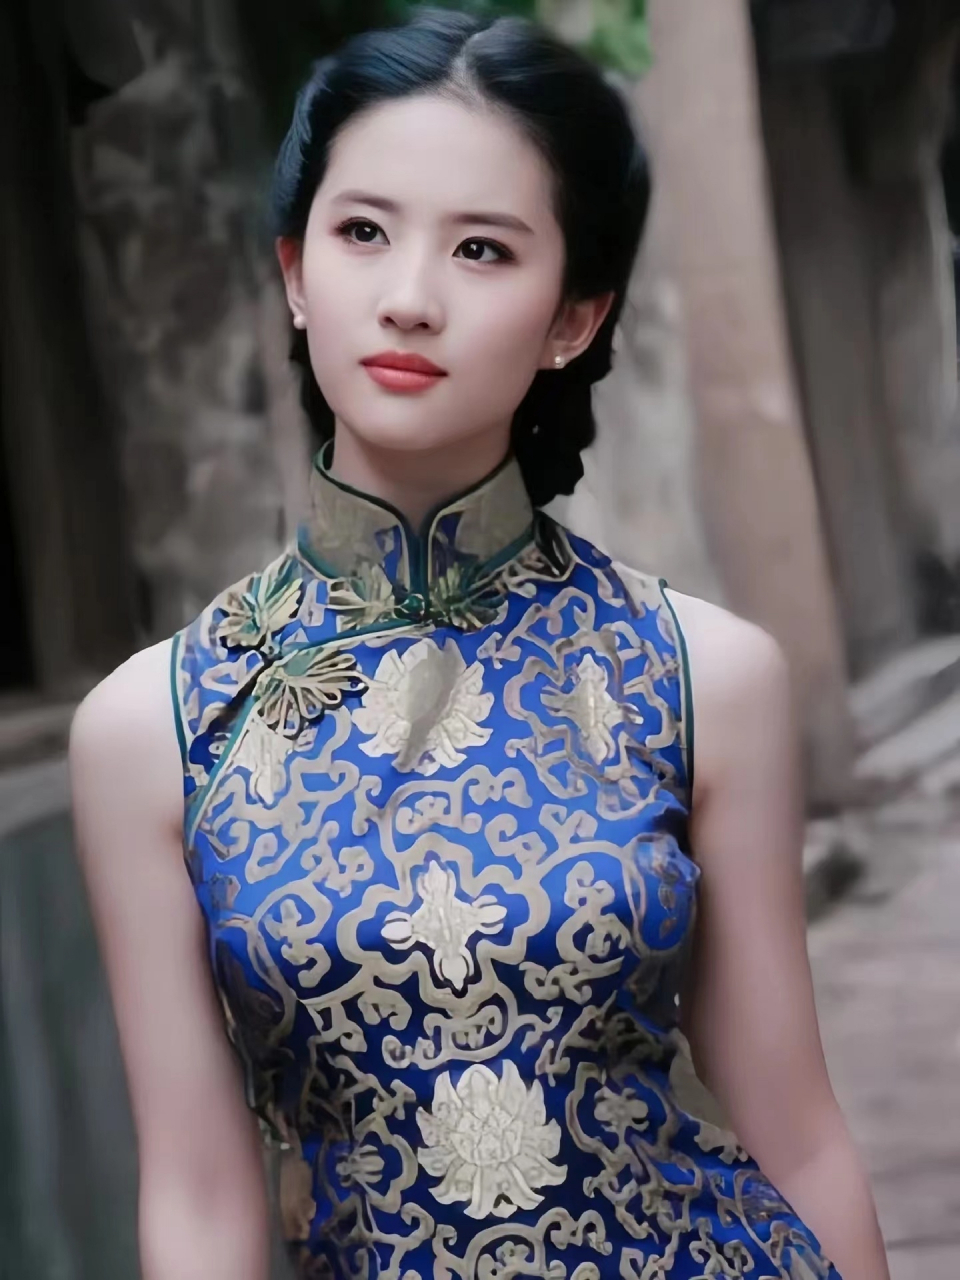 刘亦菲旗袍美人,好有气质魅力